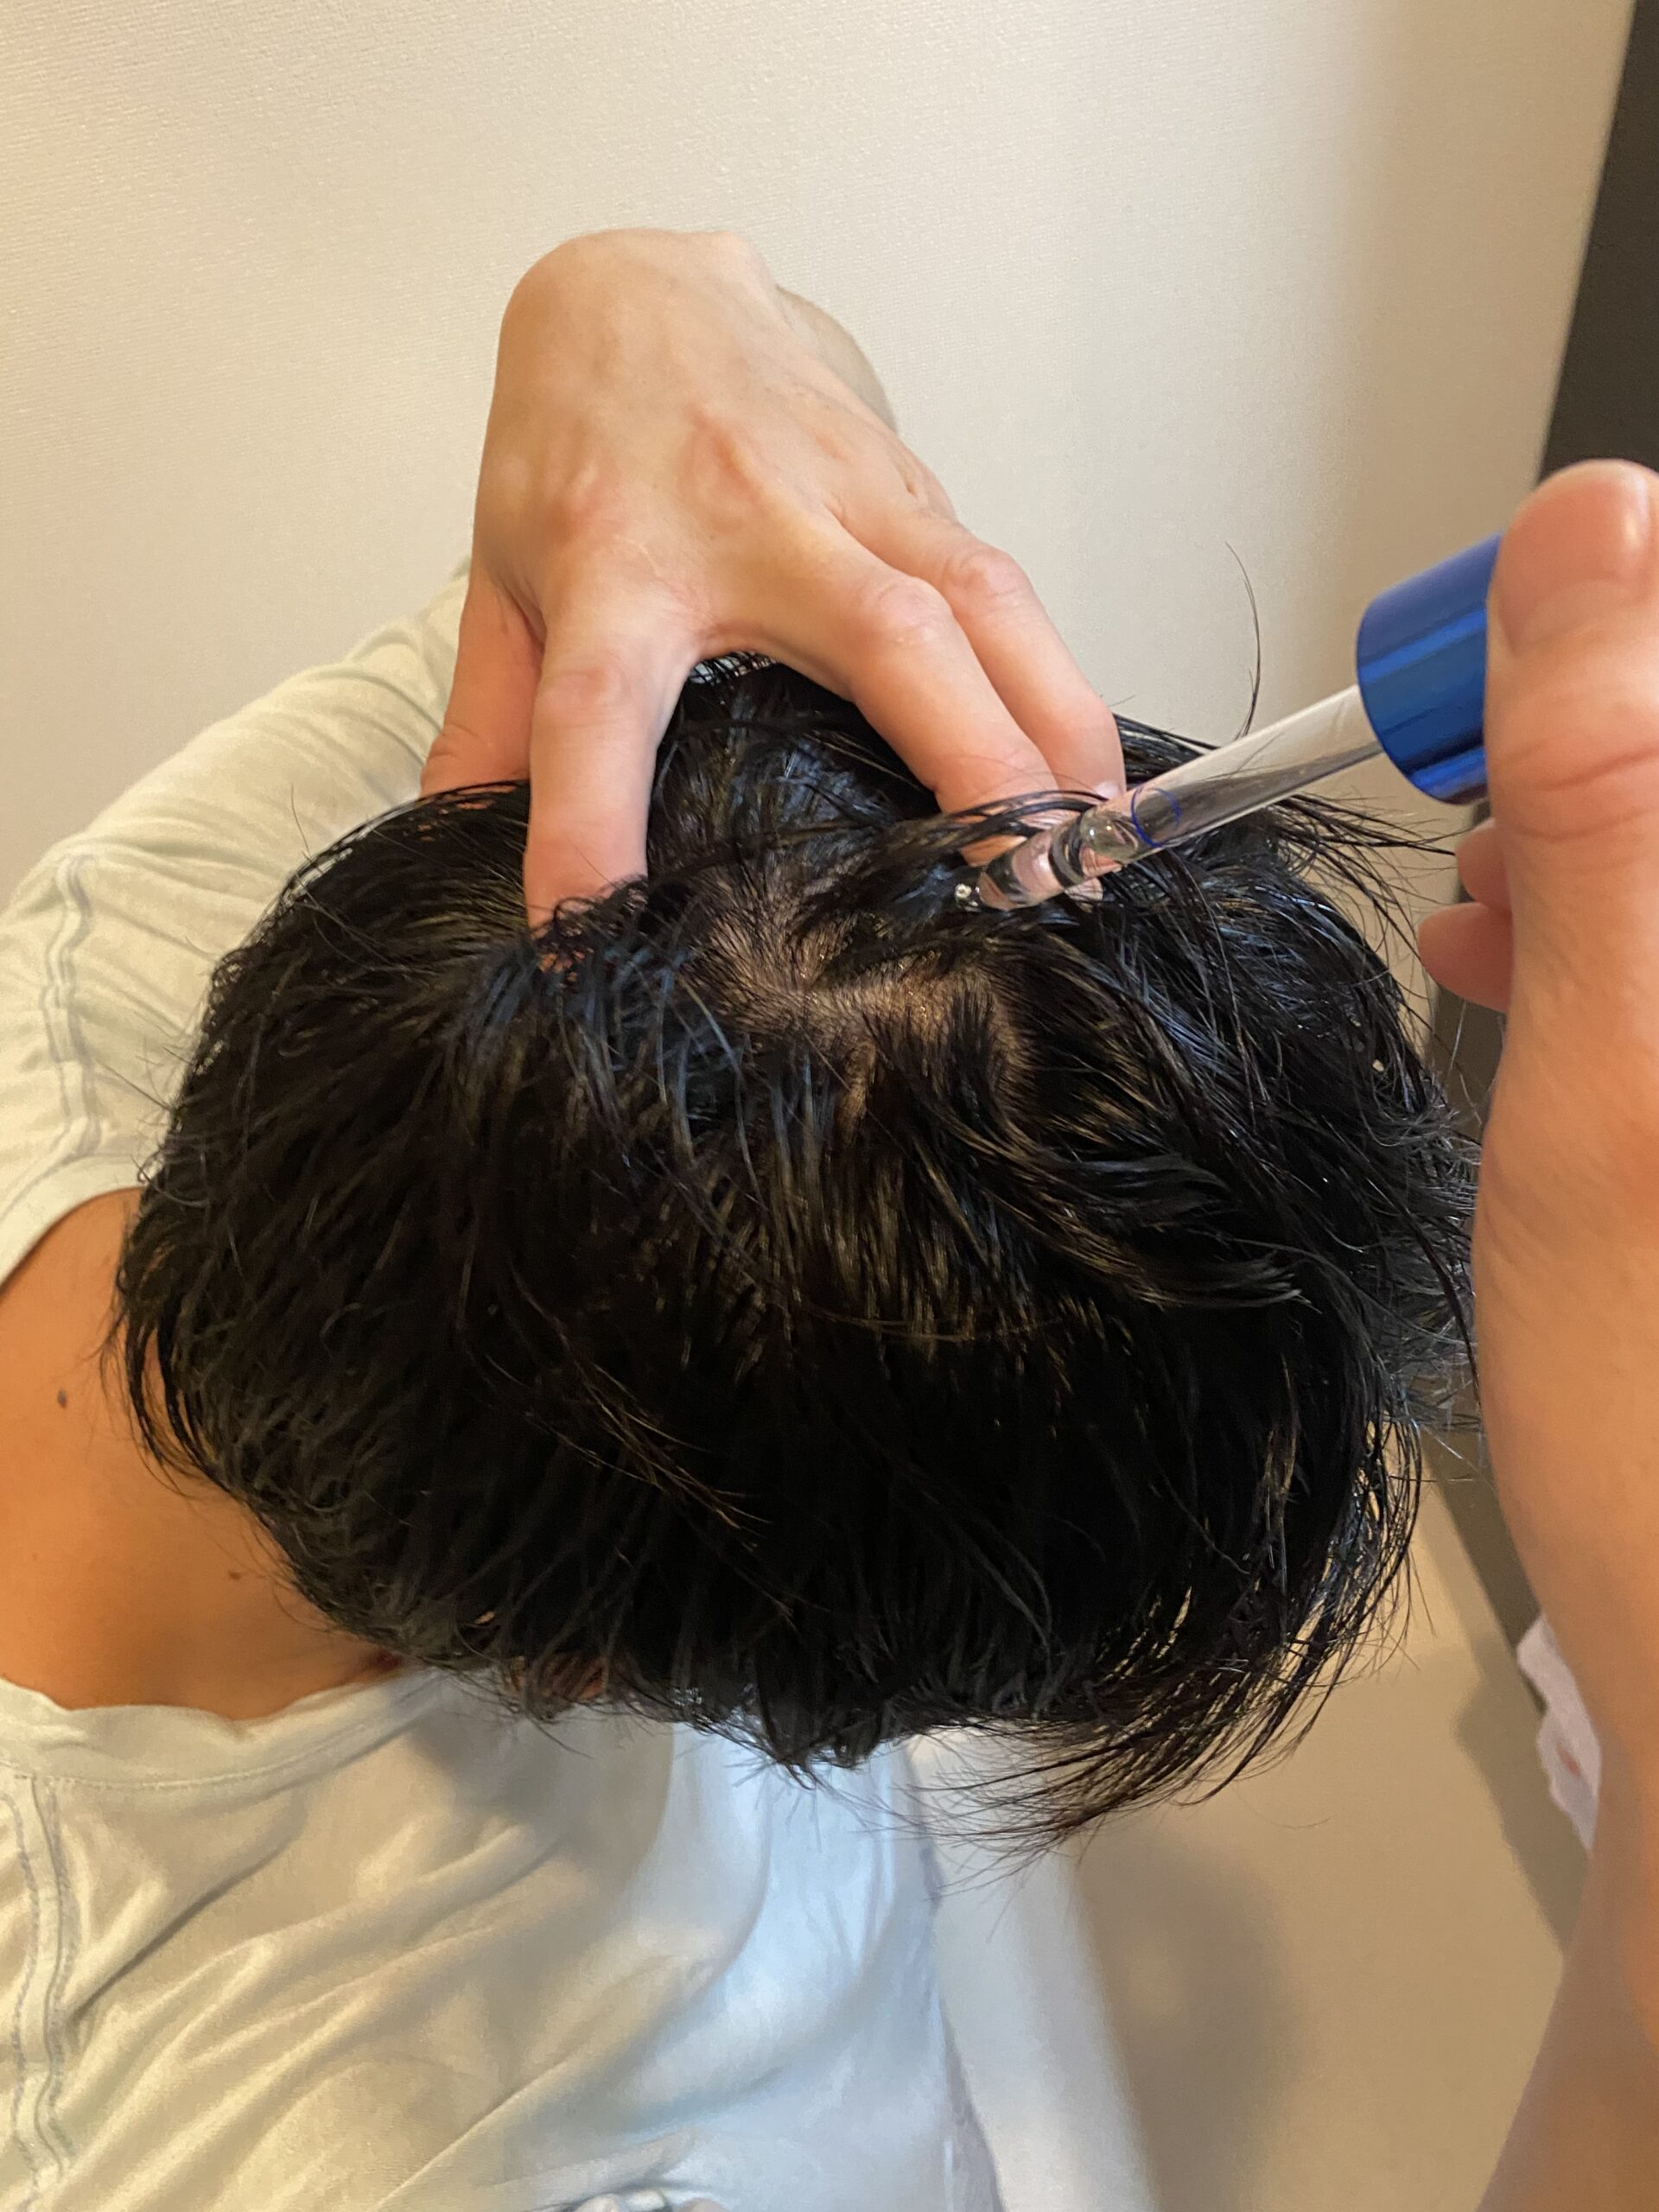 ロレアル 正規品 セリオキシル デンサーヘアnの育毛剤は抜け毛予防 薄毛対策ができるのか 使い方 効果を徹底解説